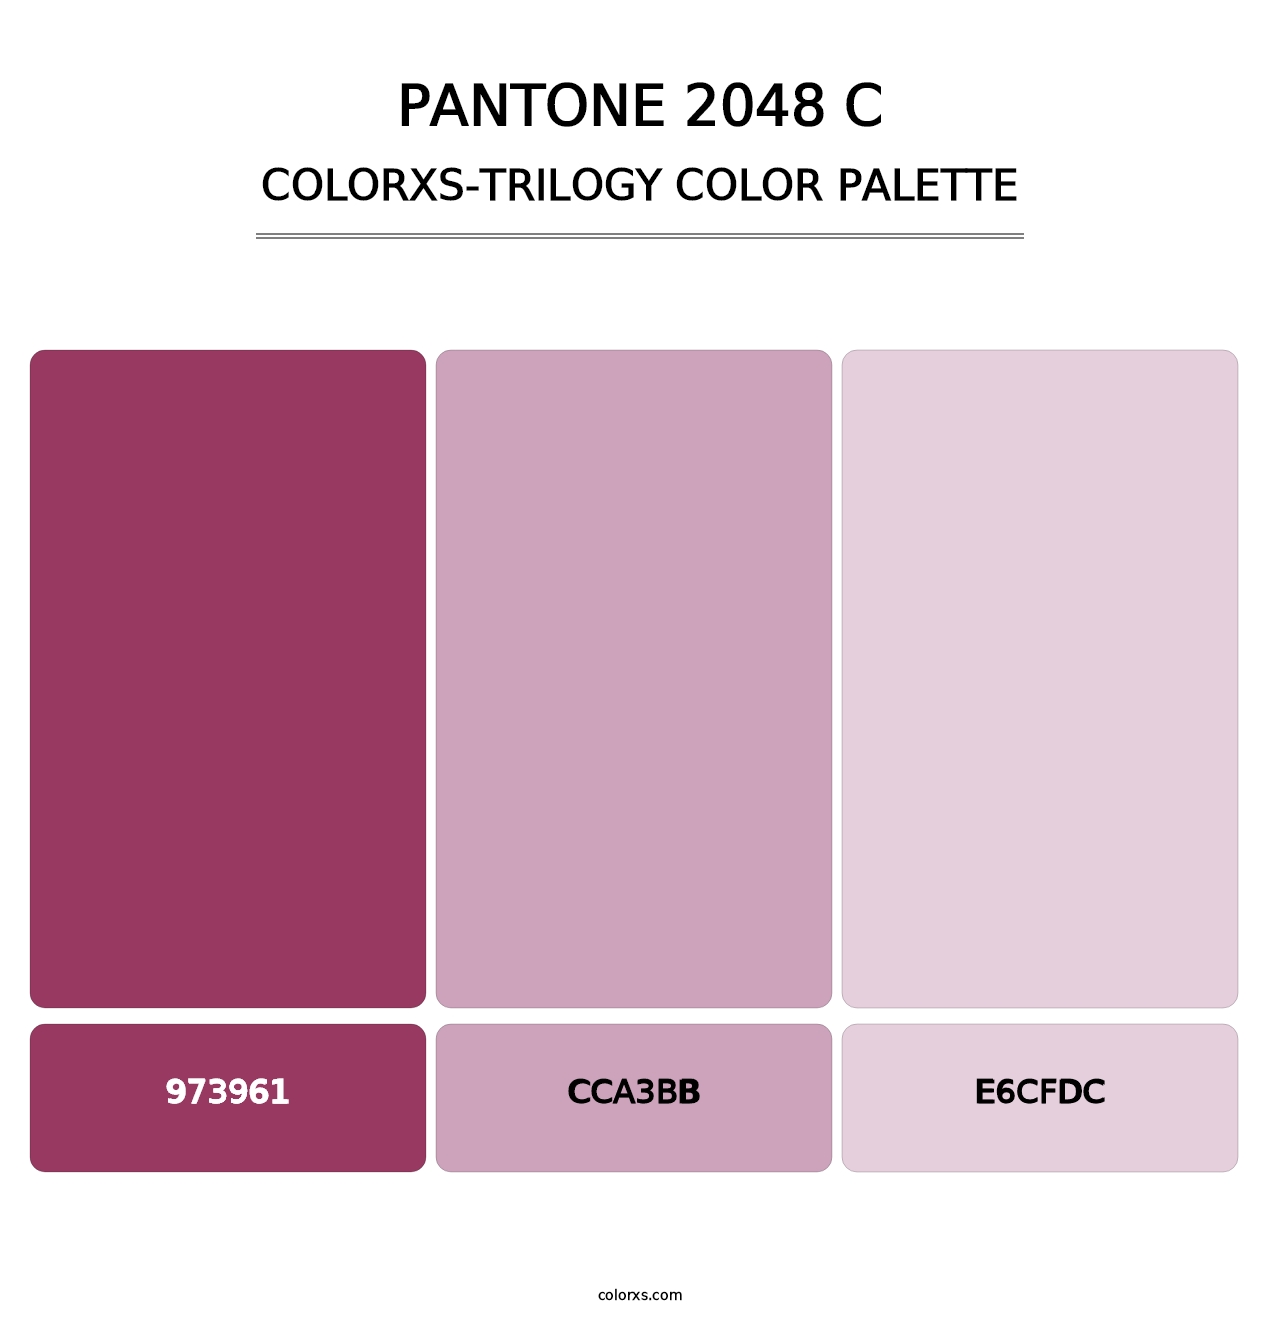 PANTONE 2048 C - Colorxs Trilogy Palette